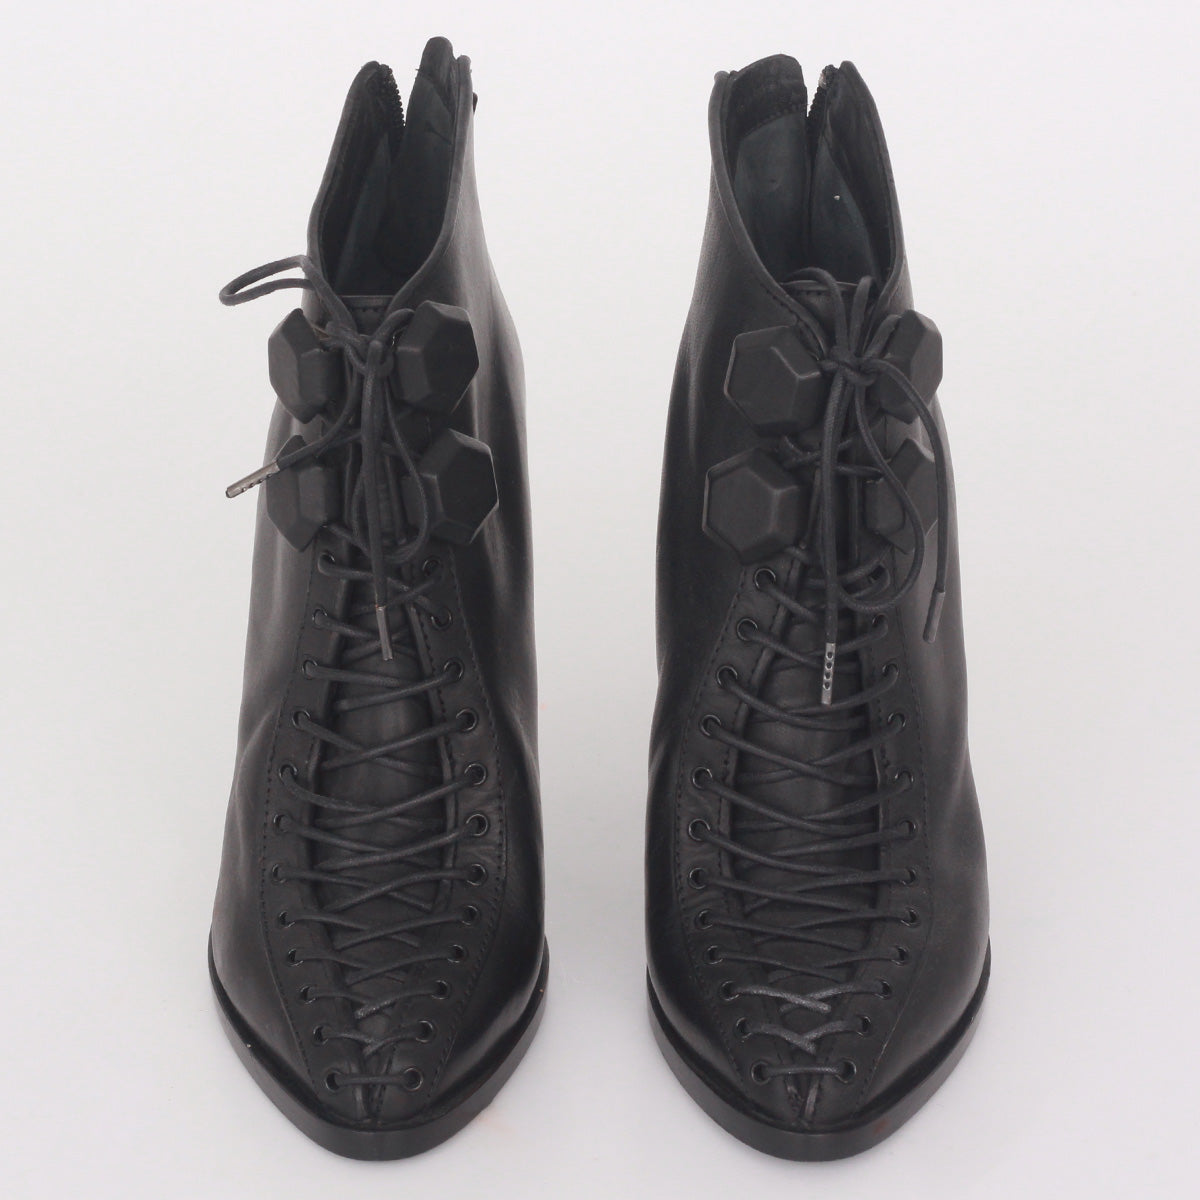 Ankle Boot Givenchy Preta c/ Cadarço Tam.35 Br